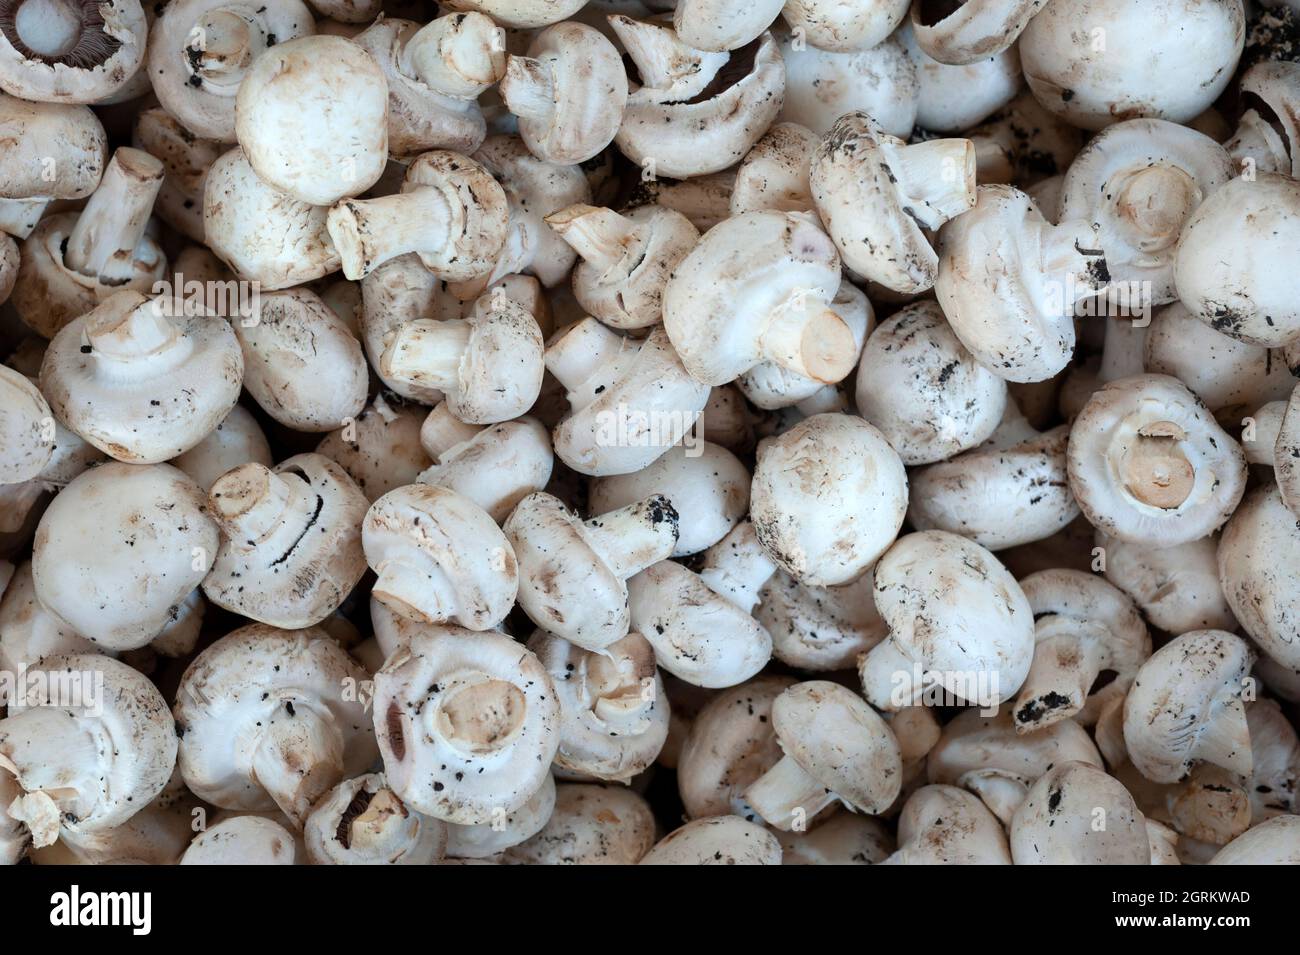 Raw white mushroom. Stock Photo